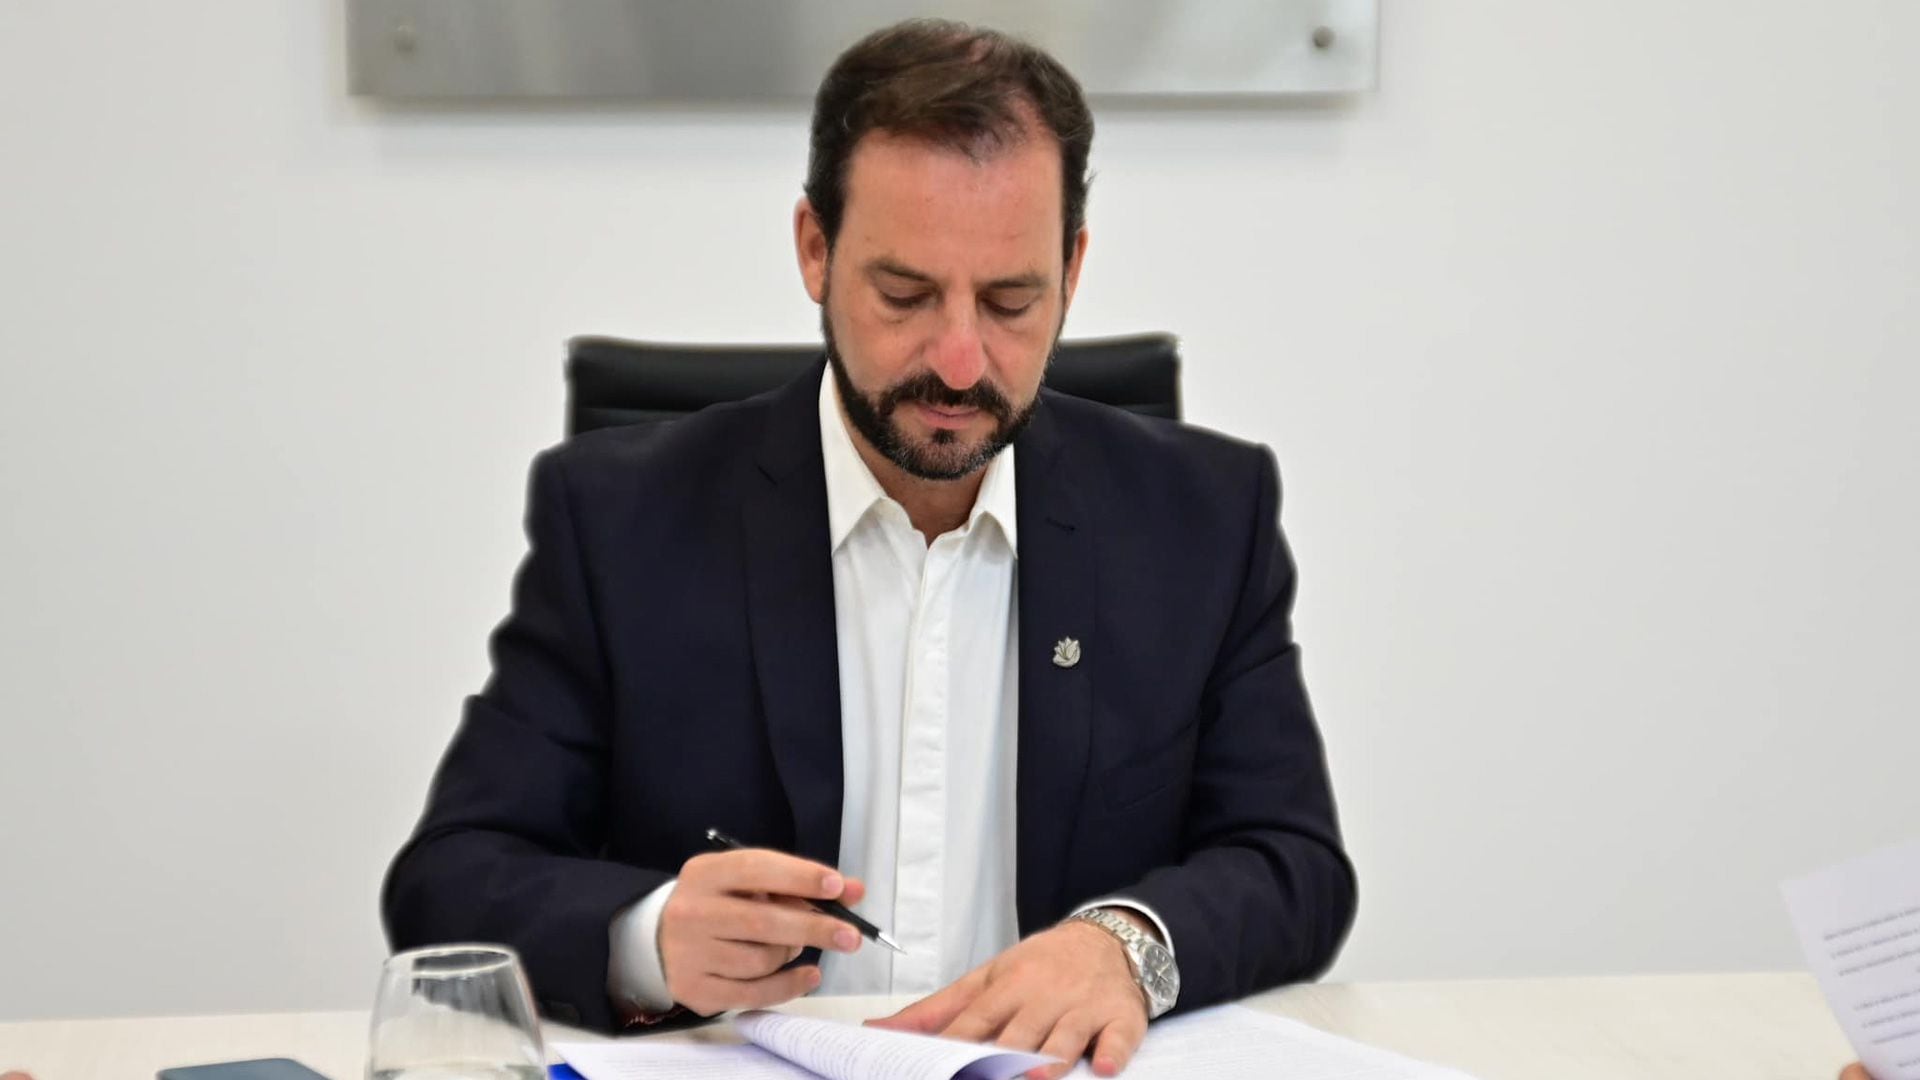 El intendente de Escobar, Ariel Sujarchuk, firmó un decreto para quitar planes y beneficios sociales a quienes participaron de los saqueos en el conurbano bonaerense